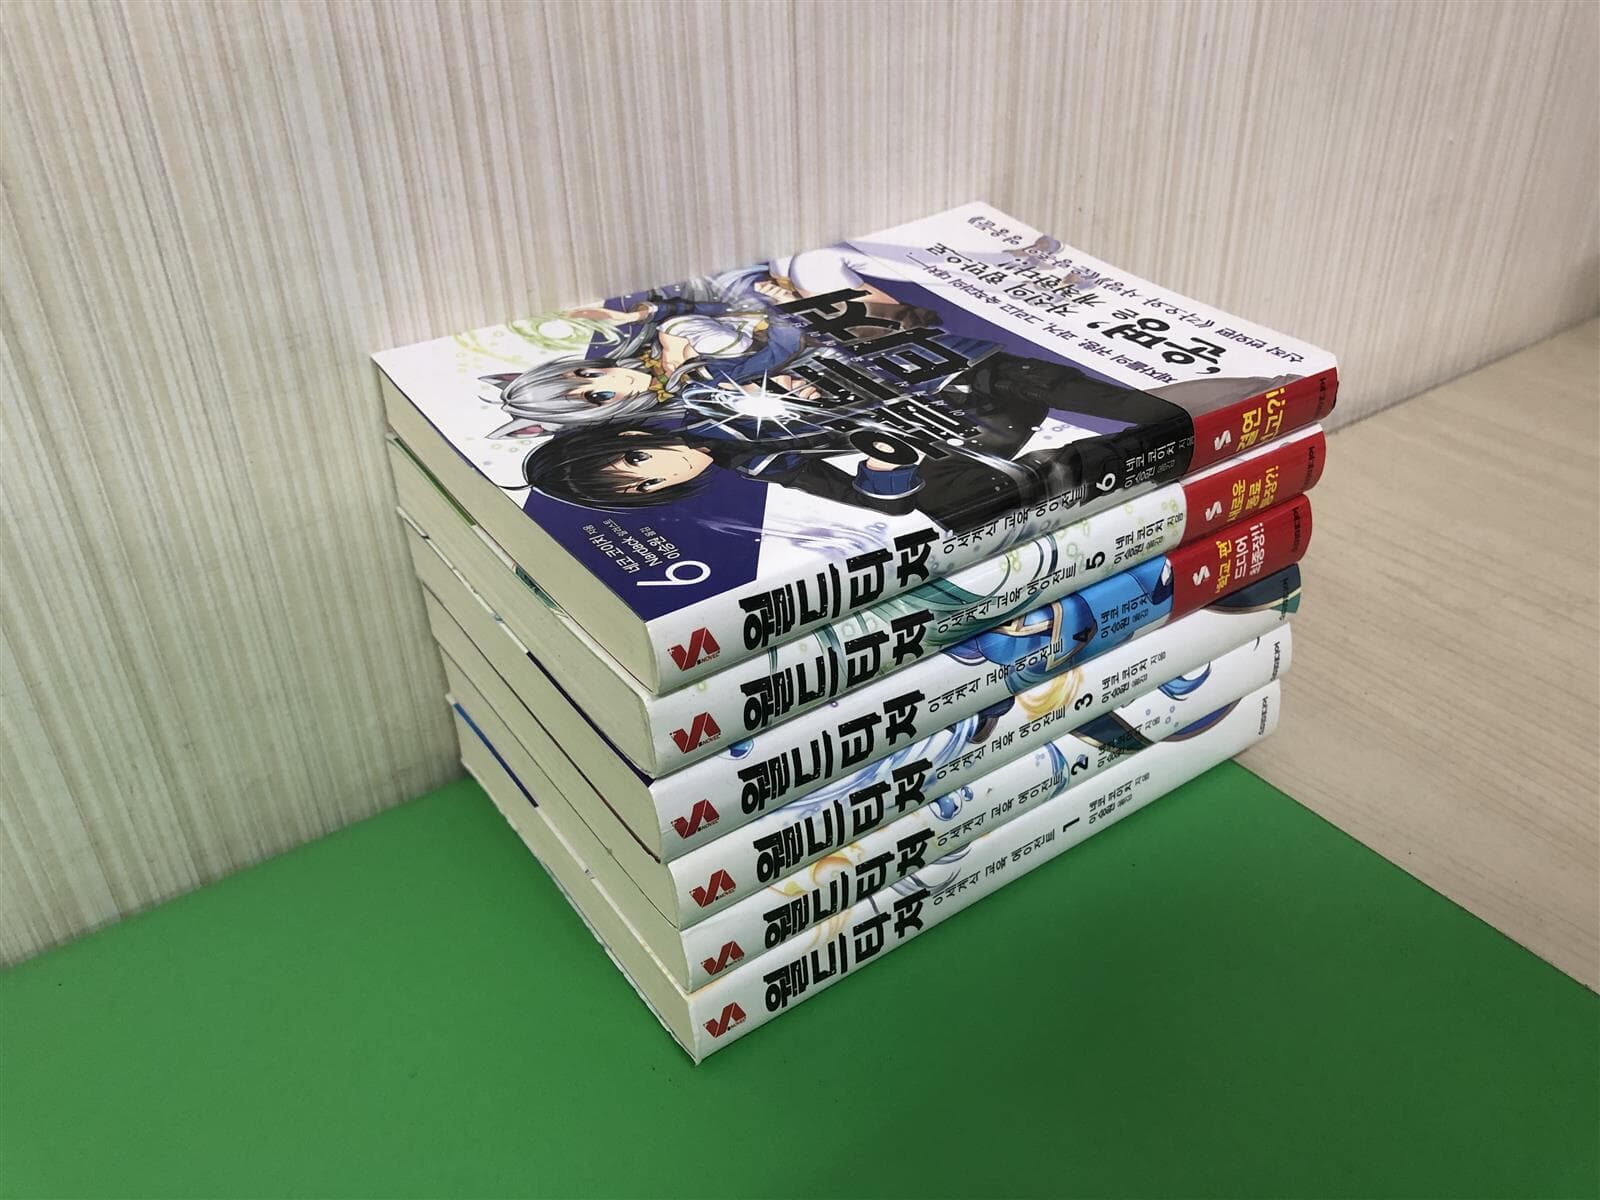 월드 티처 1-6권 - S Novel+ (소장용)